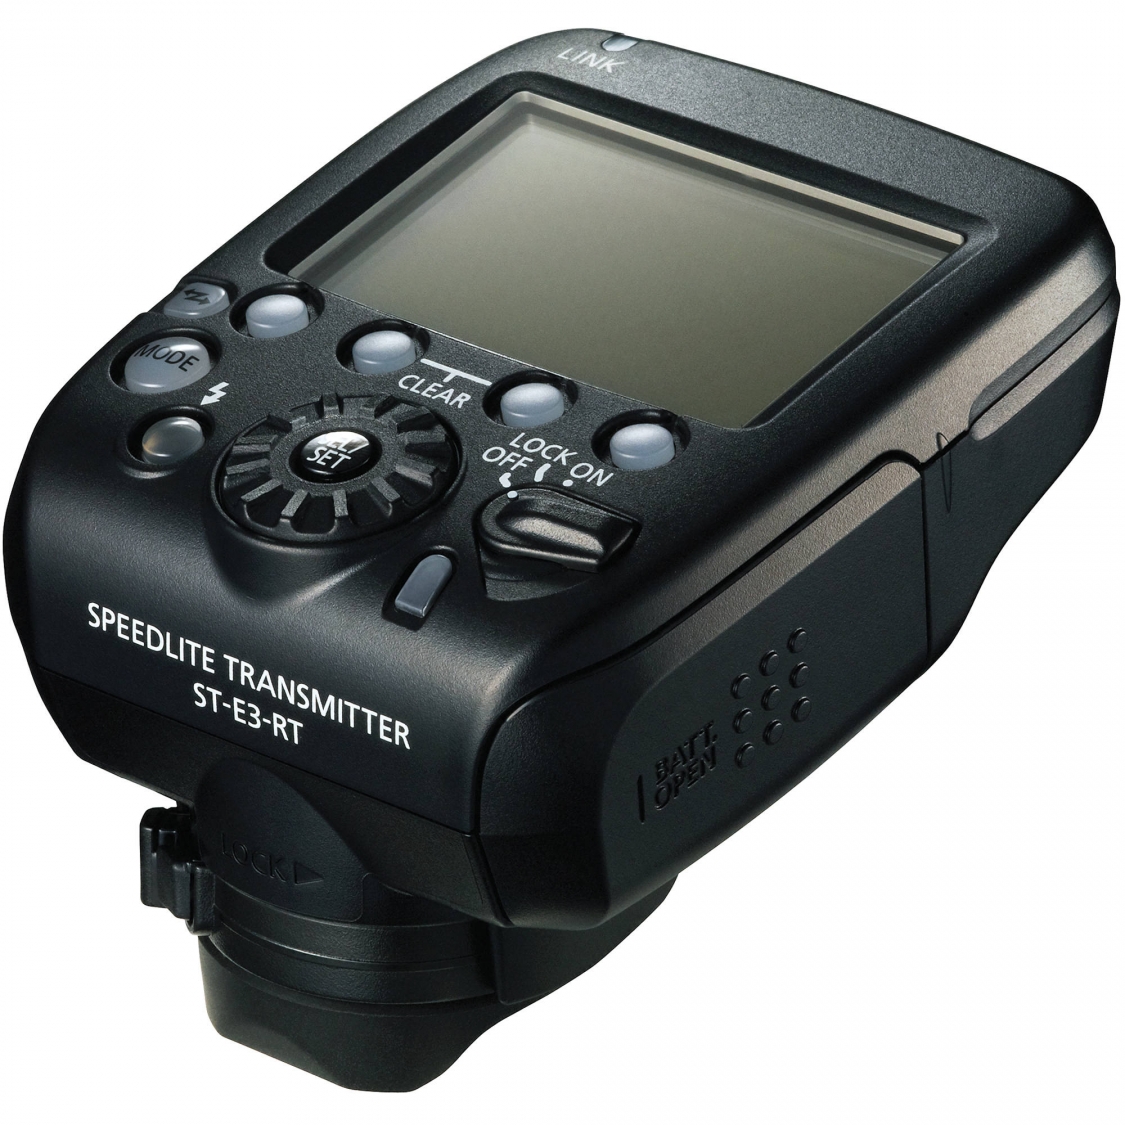 Canon ST-E3-RT Speedlight Transmitter